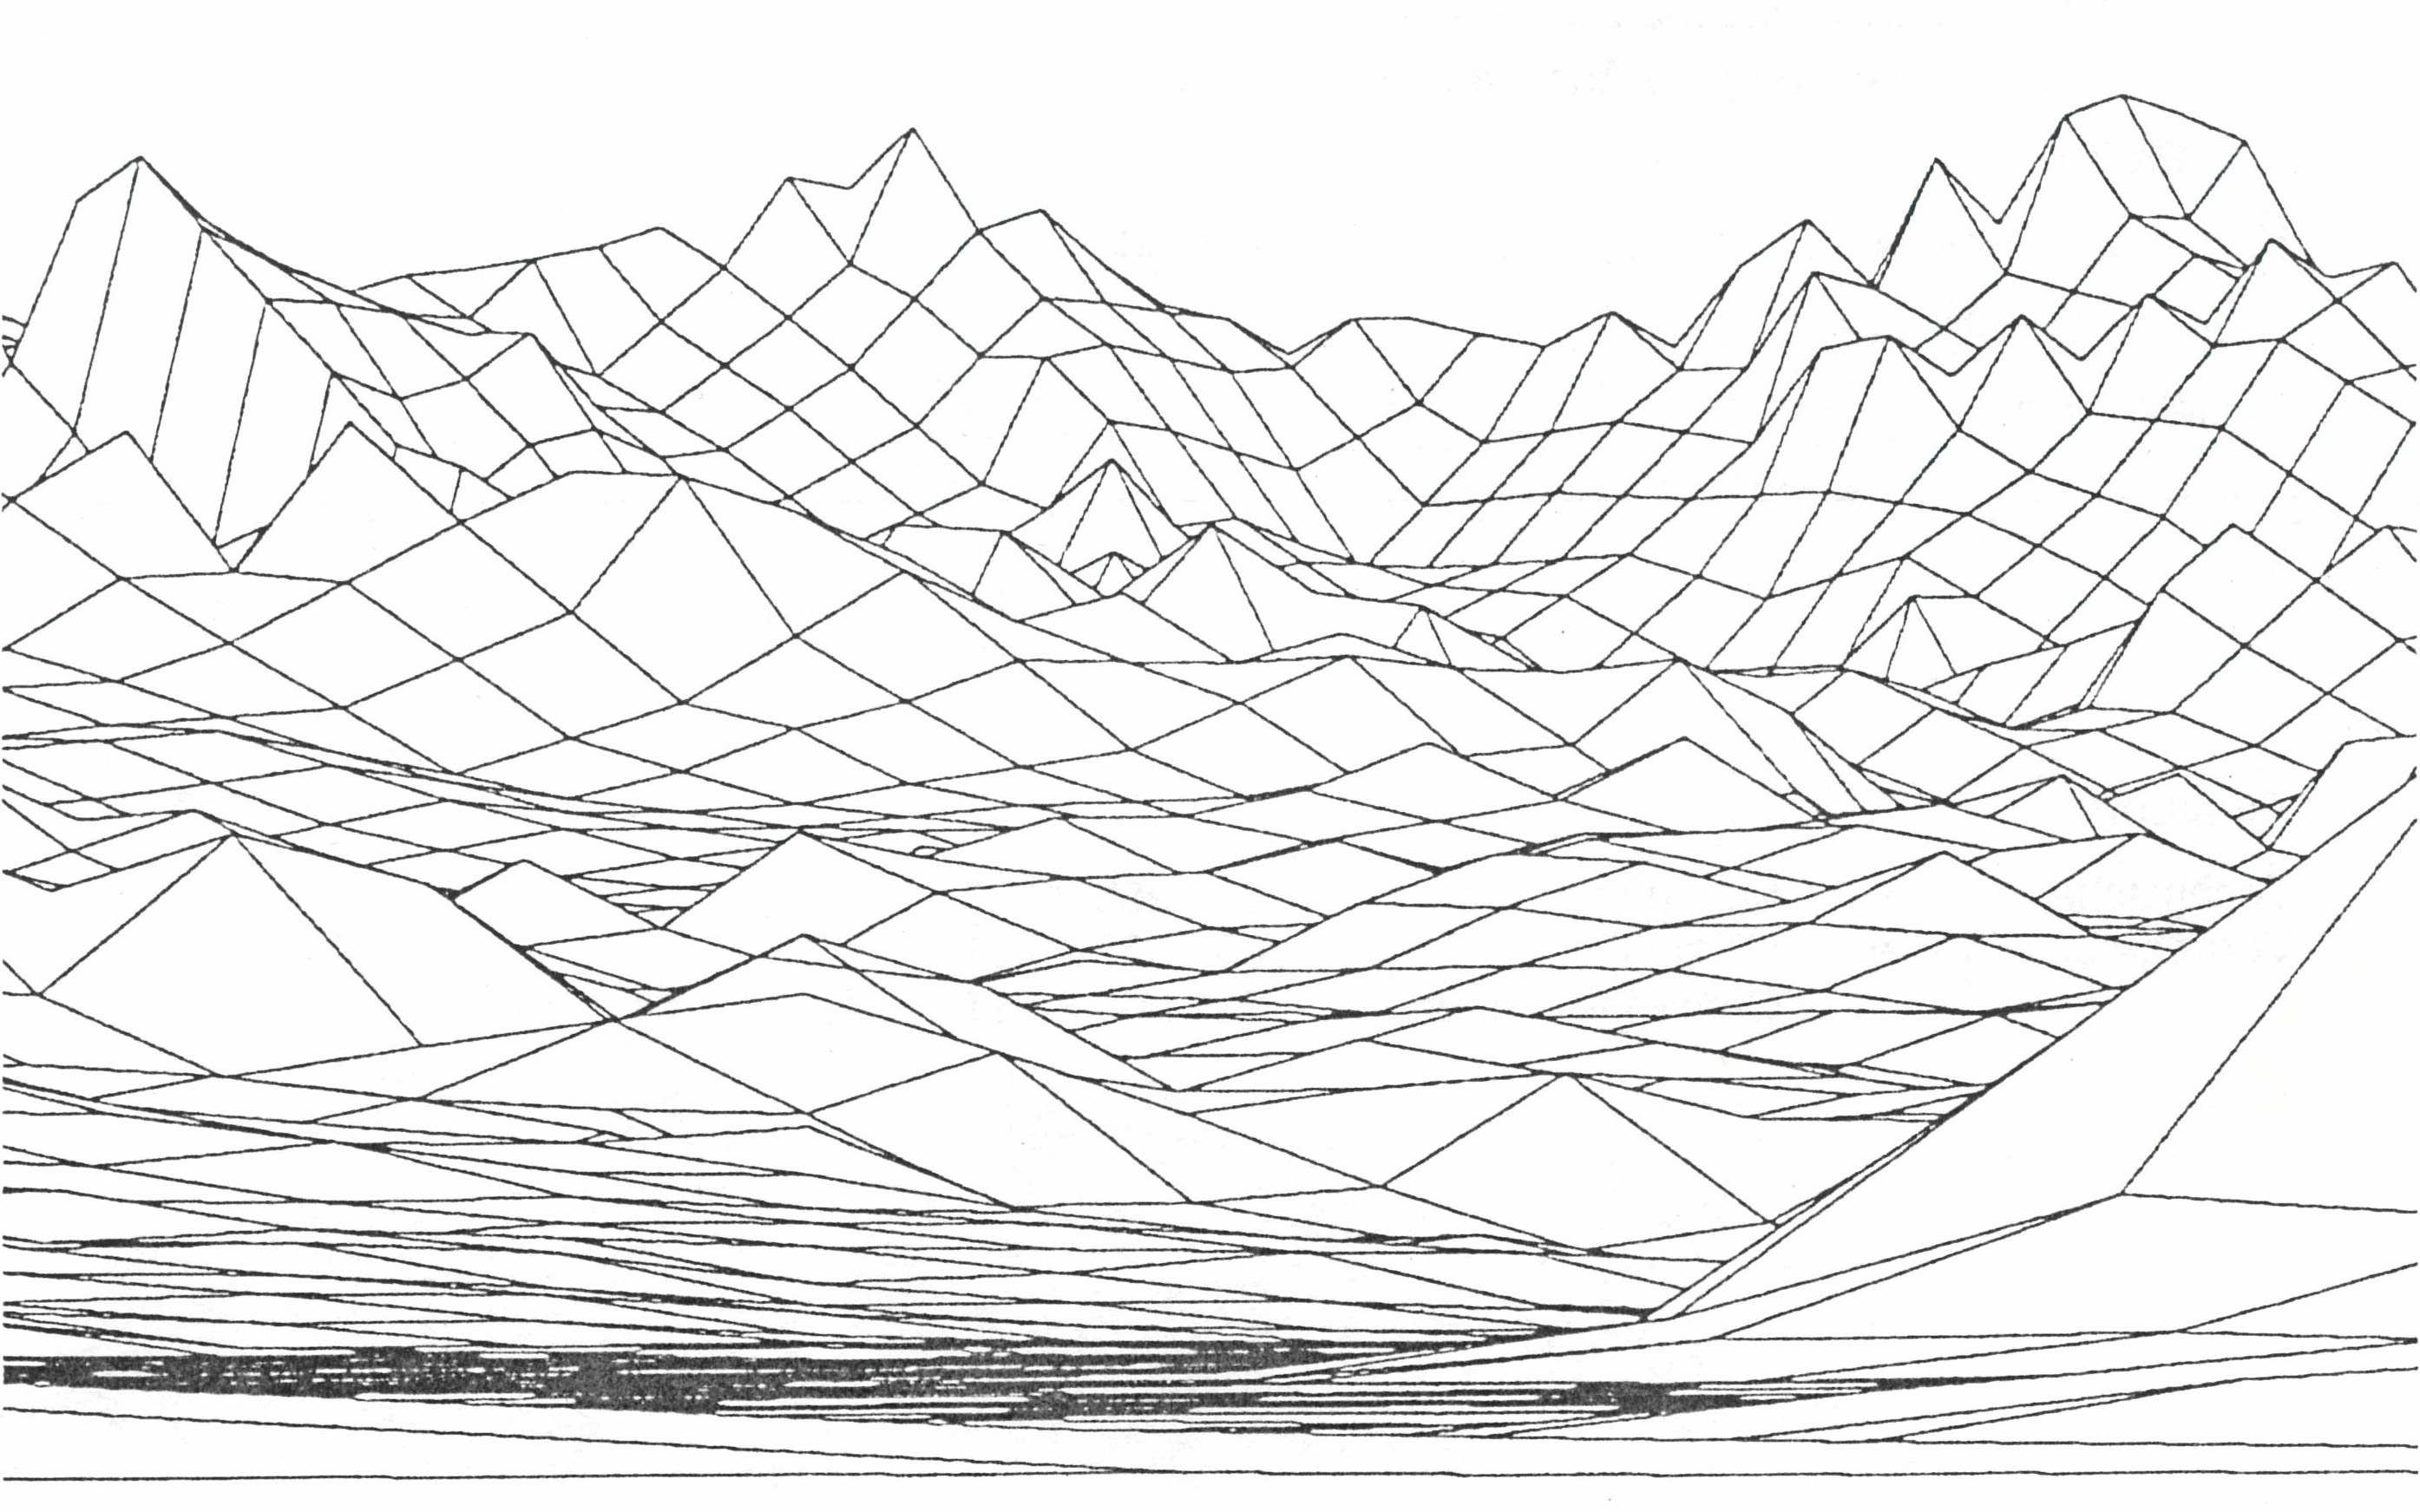 Représentation panoramique de l'Eiger, du Mönch et de la Jungfrau dans un quadrillage numérique à grosses mailles.